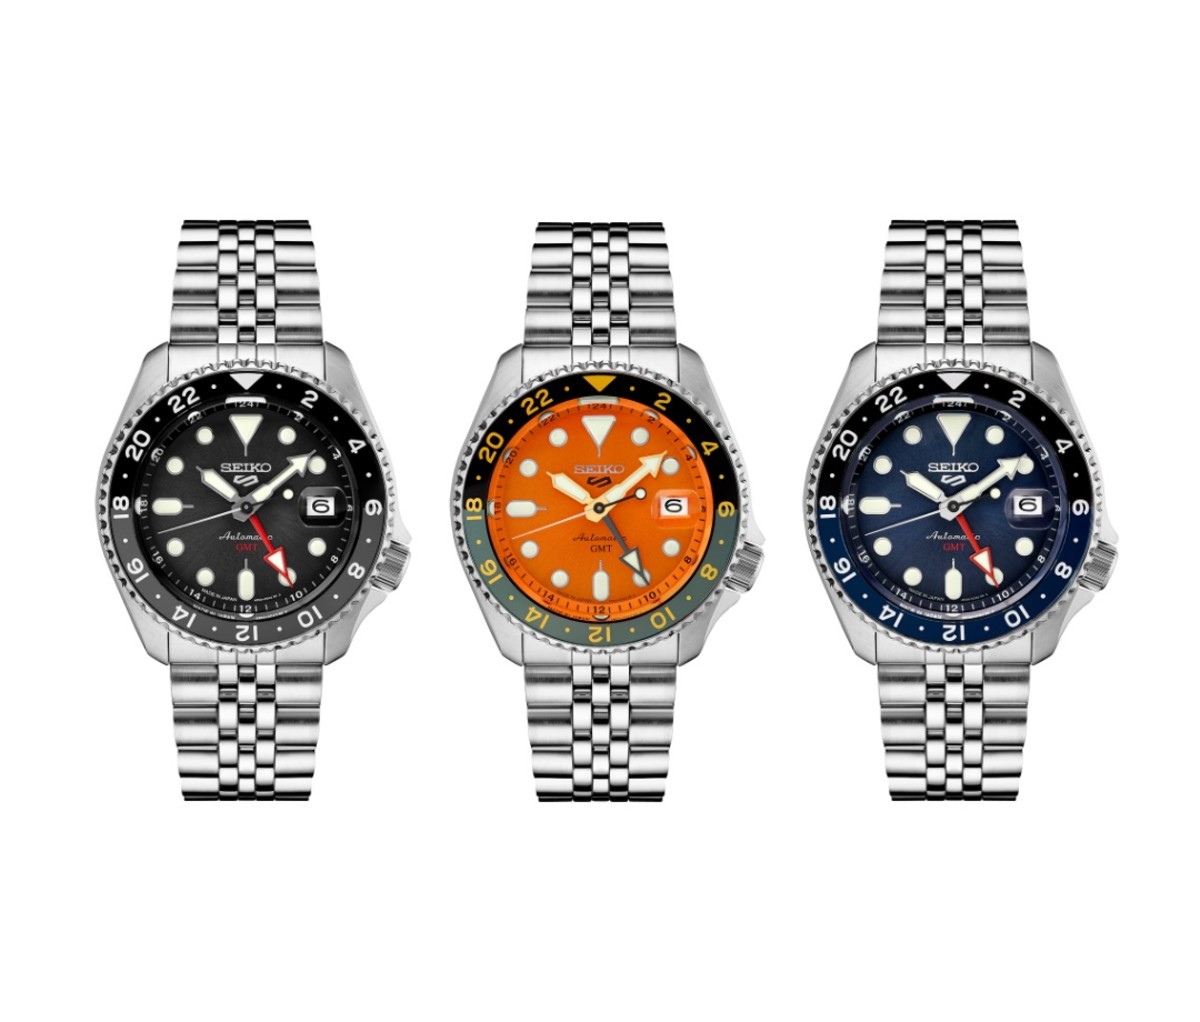 Three Seiko 5 Sports GMT watches on a white background